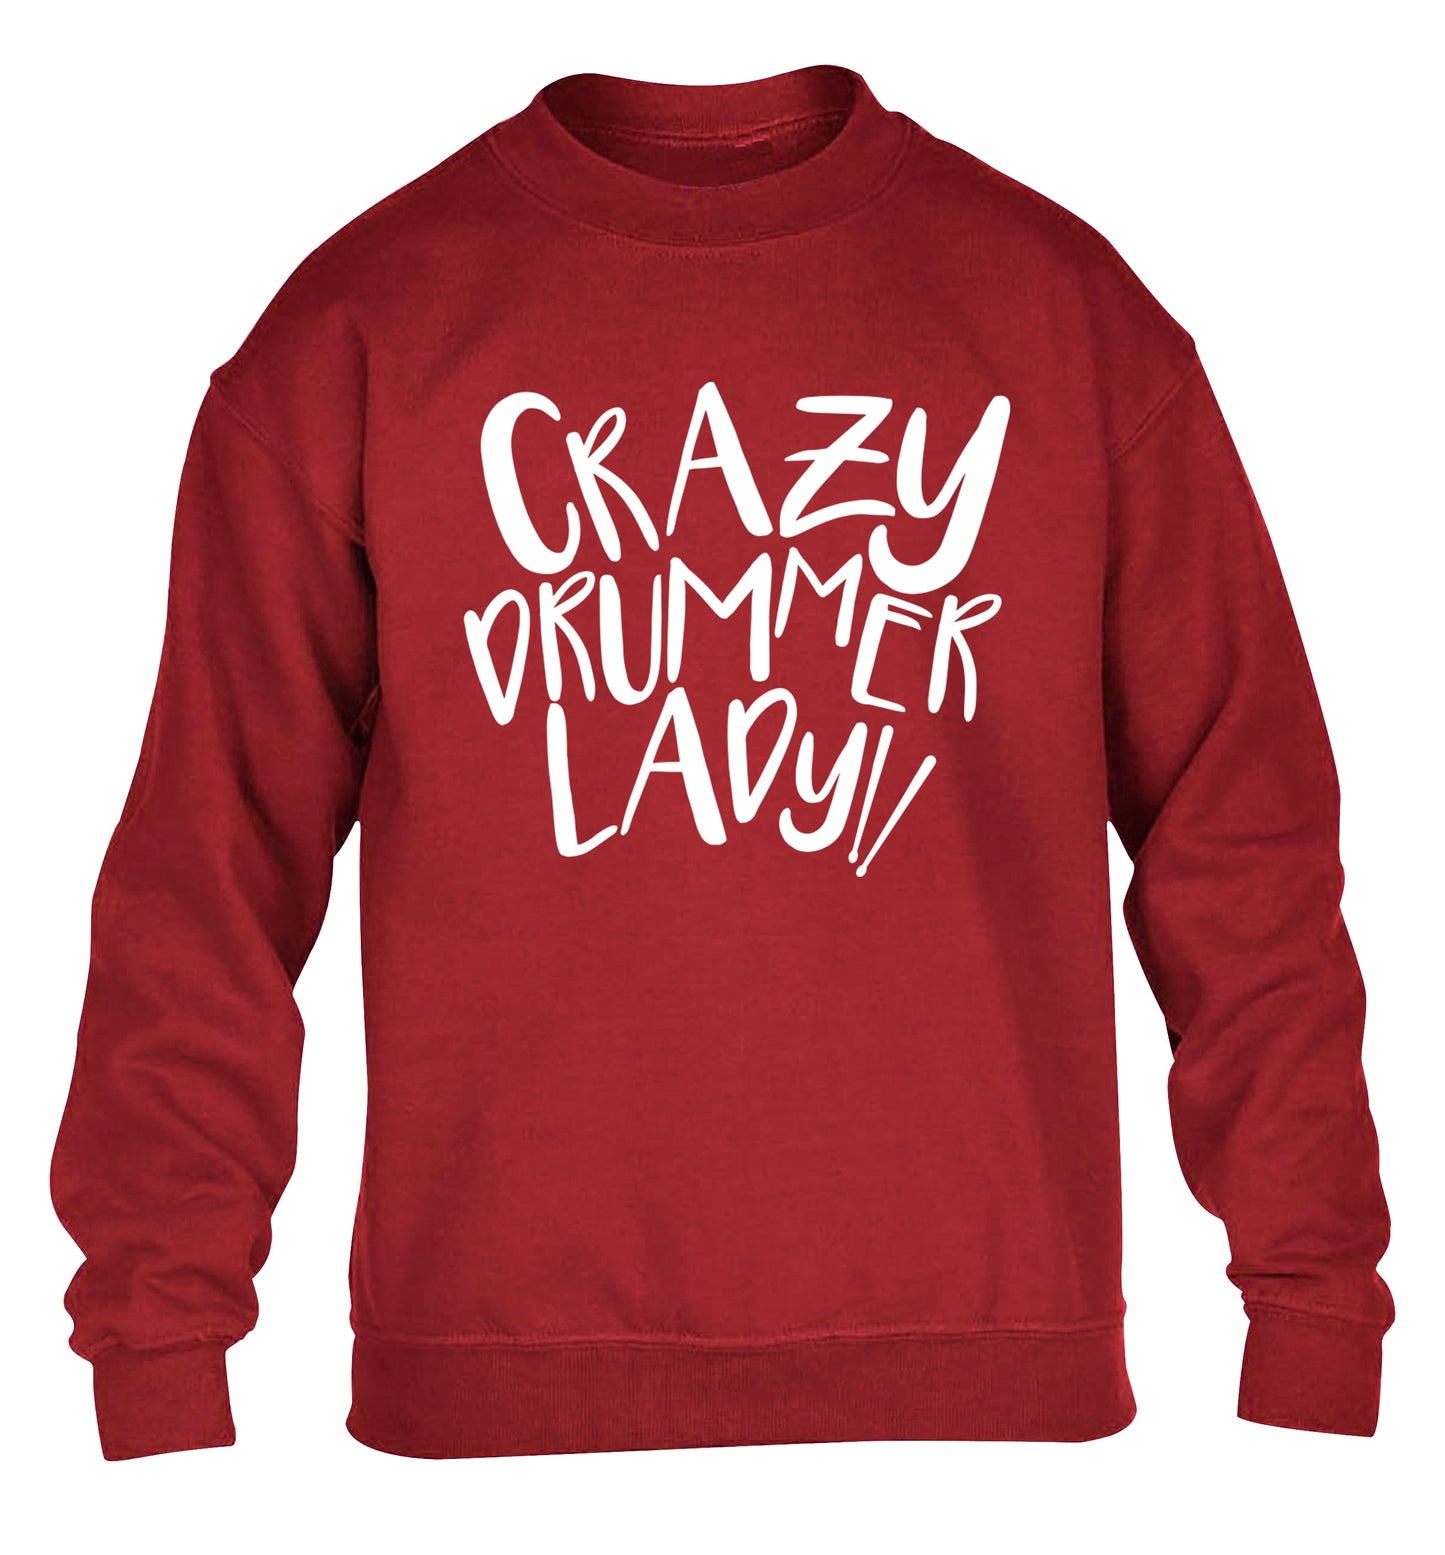 Crazy drummer lady children's grey sweater 12-14 Years